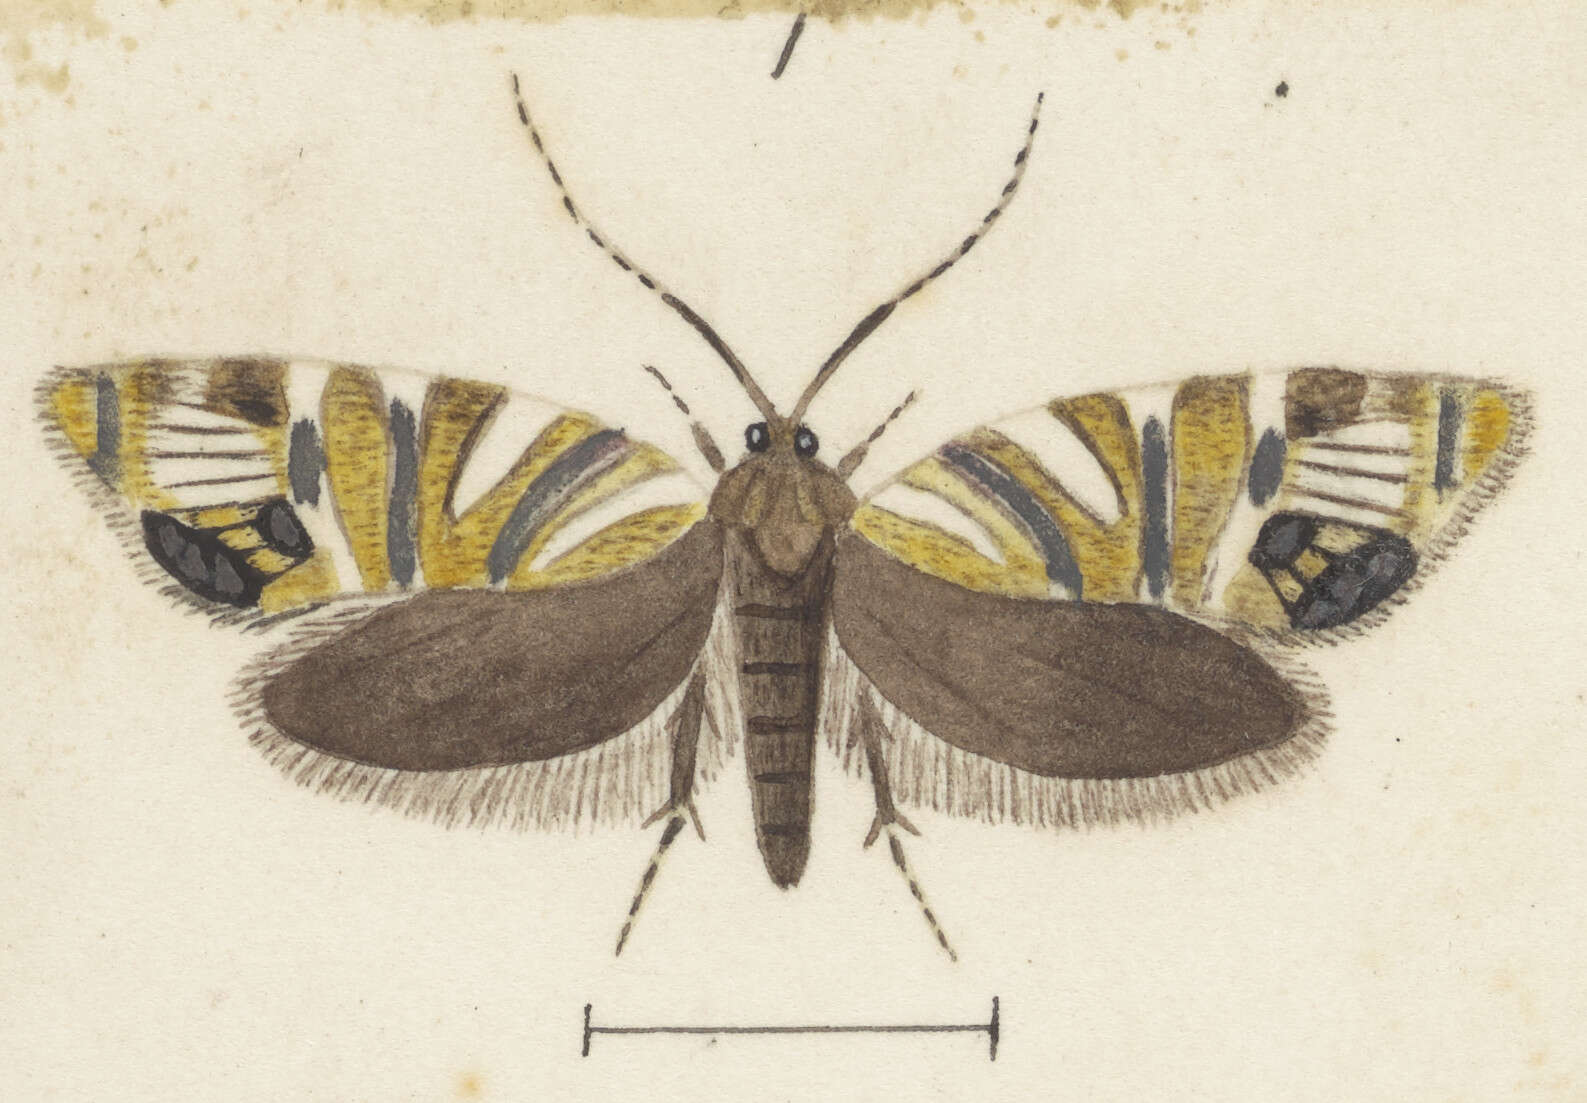 Image of Protosynaema eratopis Meyrick 1885